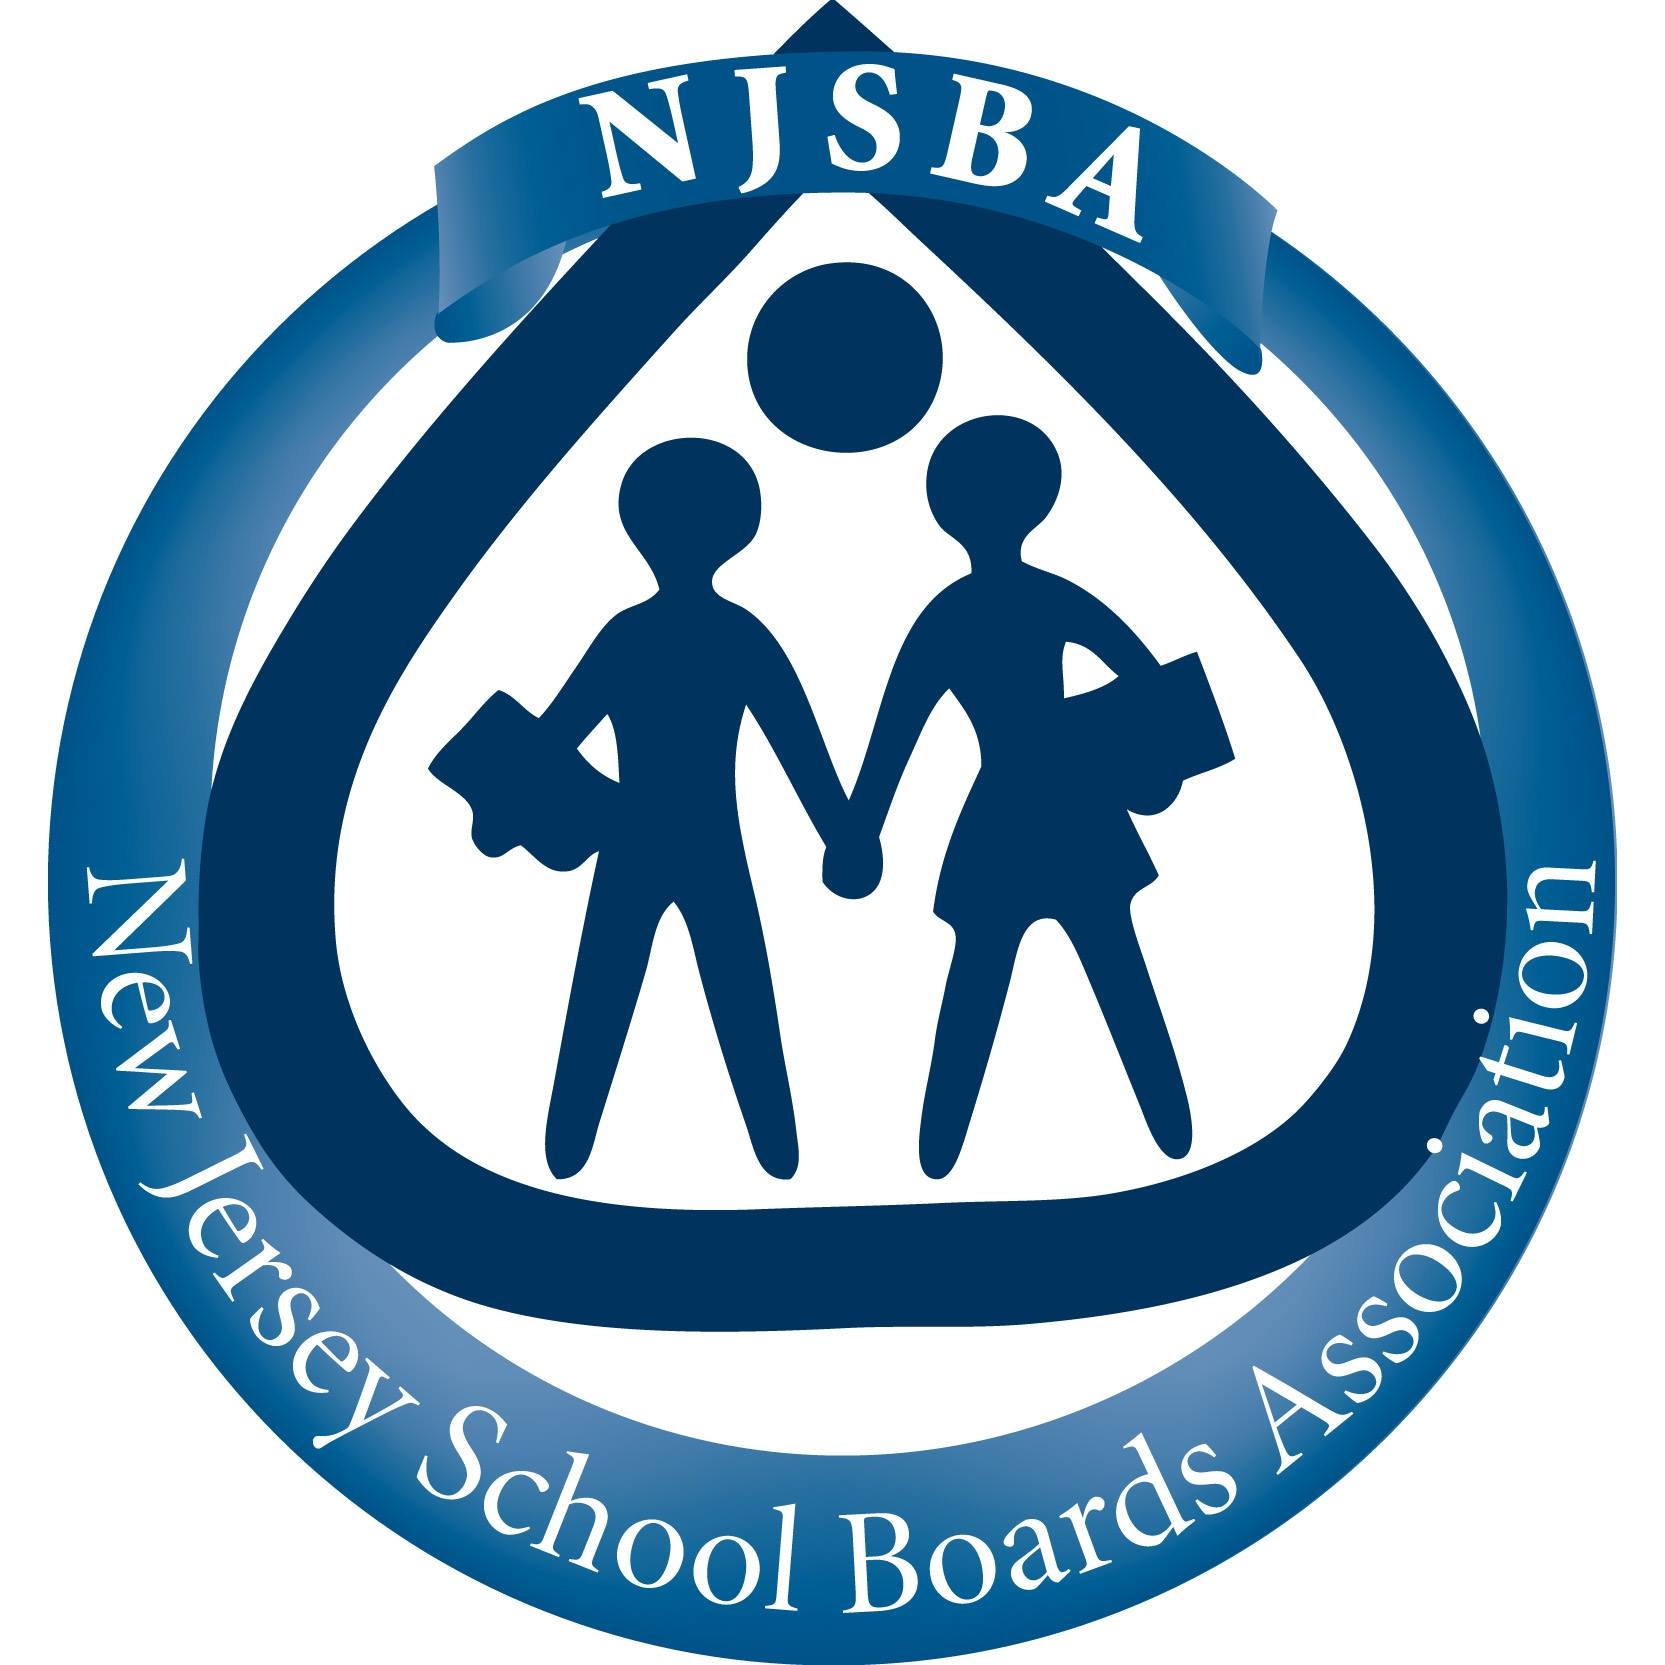 New Jersey School Boards Association logo